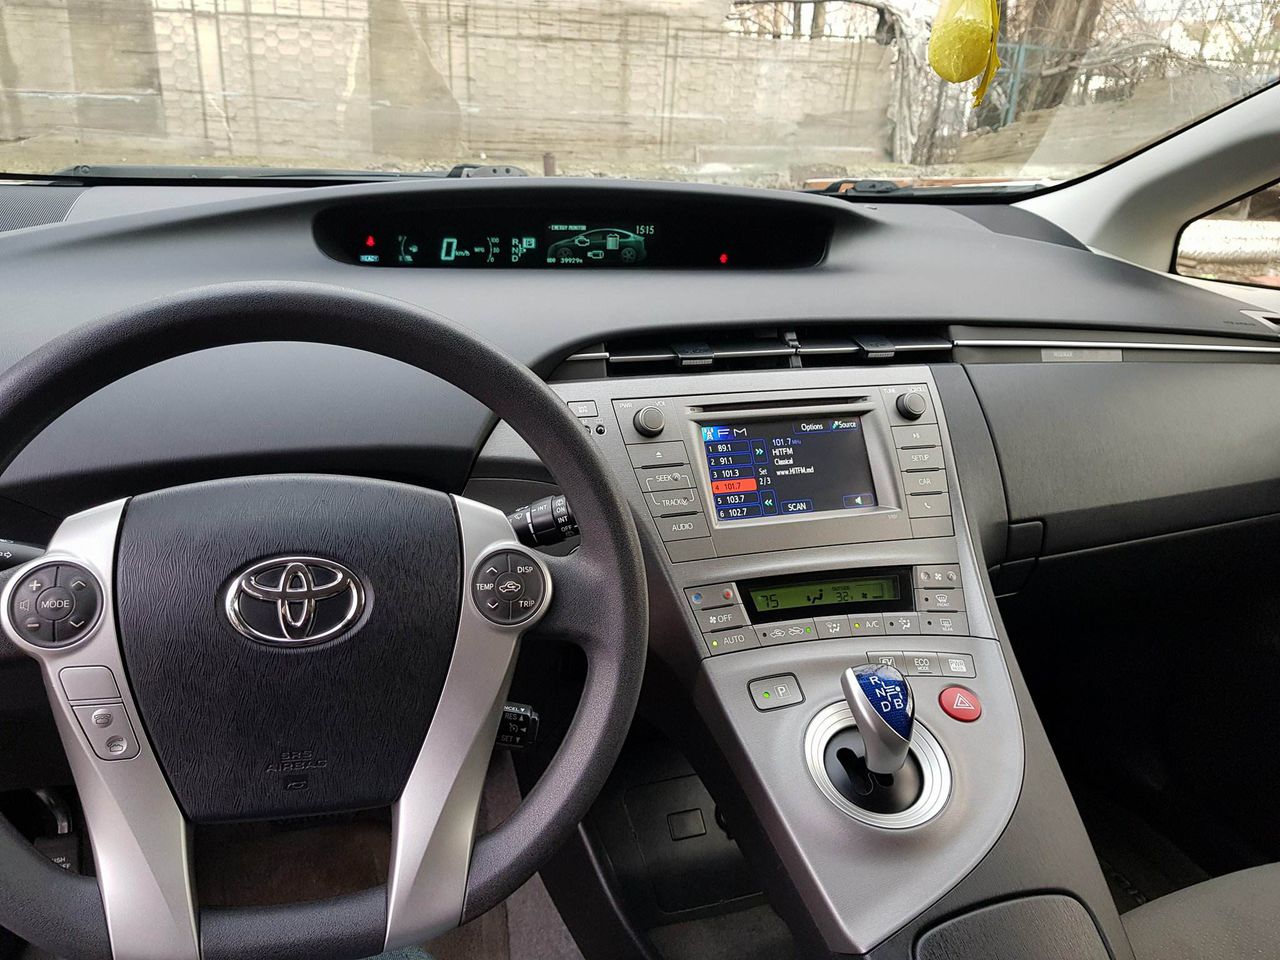 Car for Rent Chisinau, Moldova - Toyota Prius1